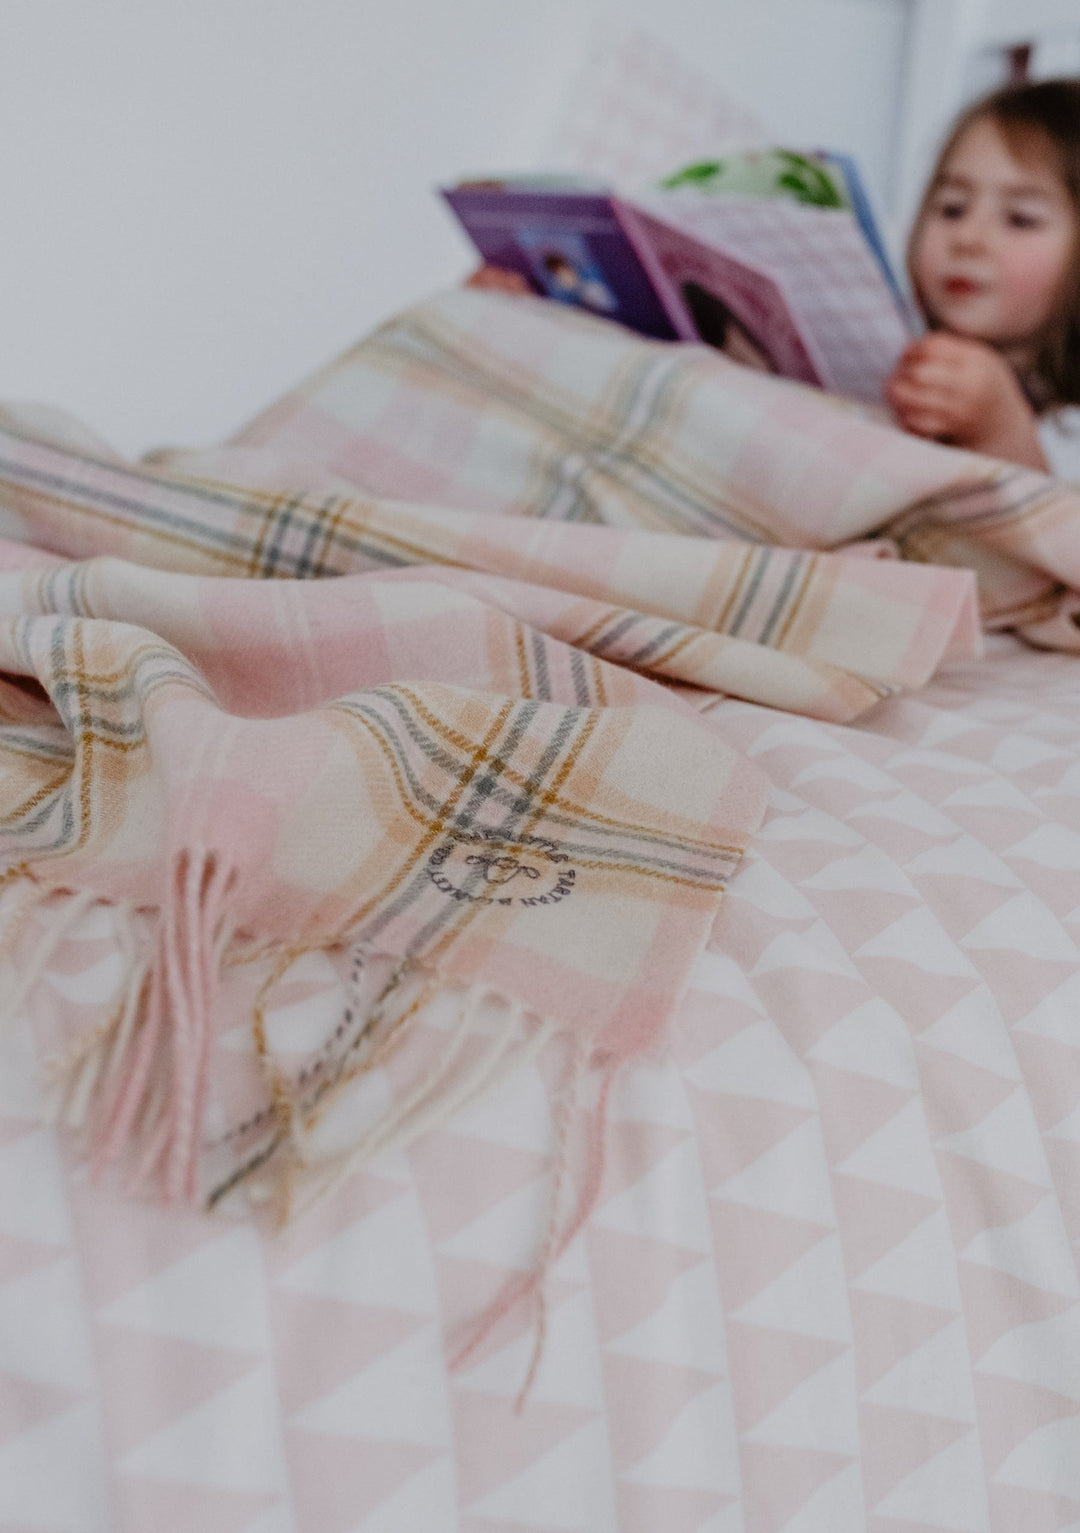 Lambswool Kids Blanket in Pink Nursery Check